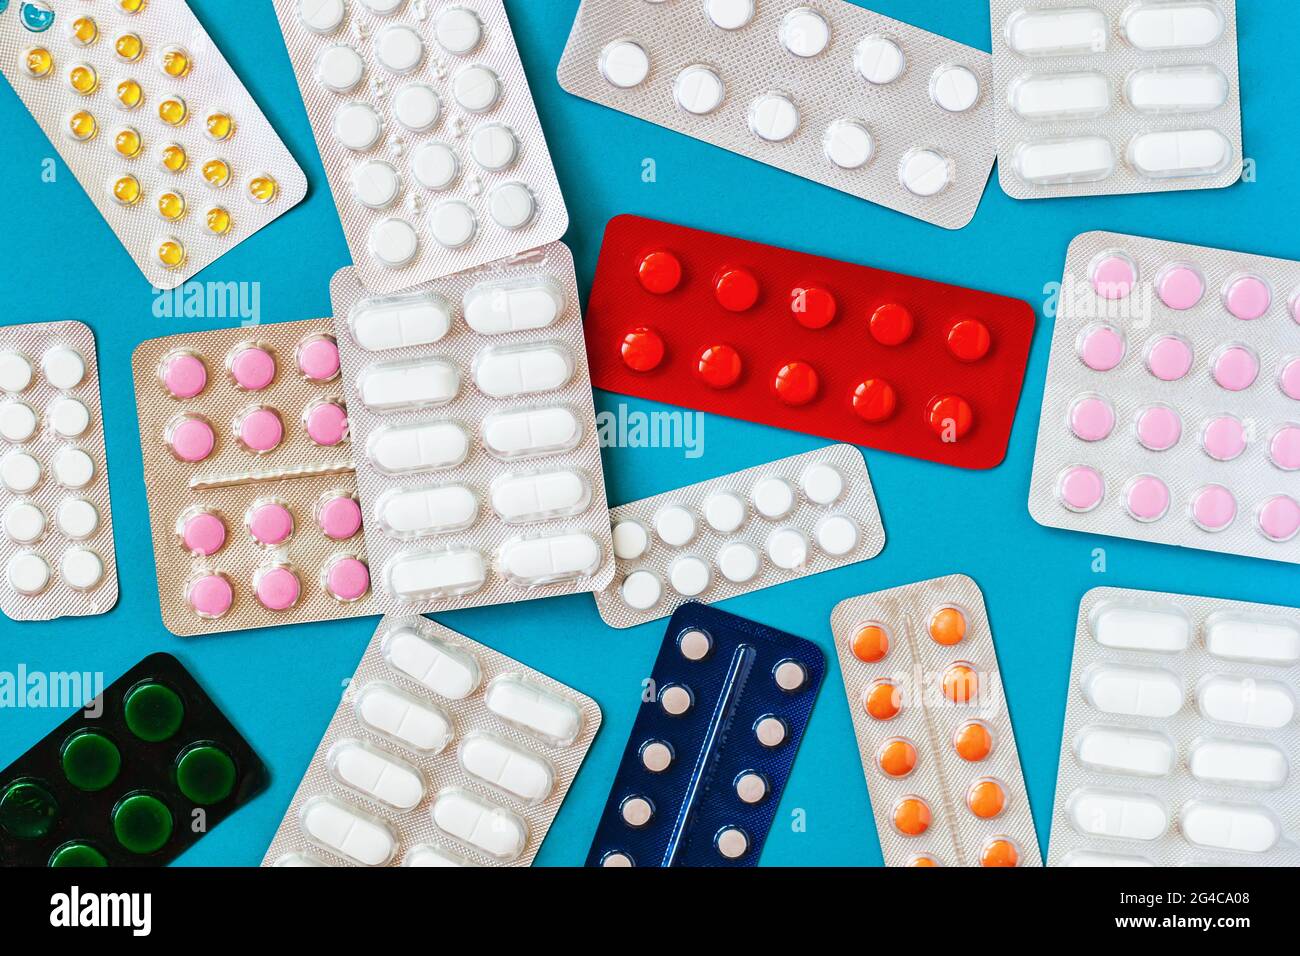 Confezioni blister di diversi tipi di pillole, compresse